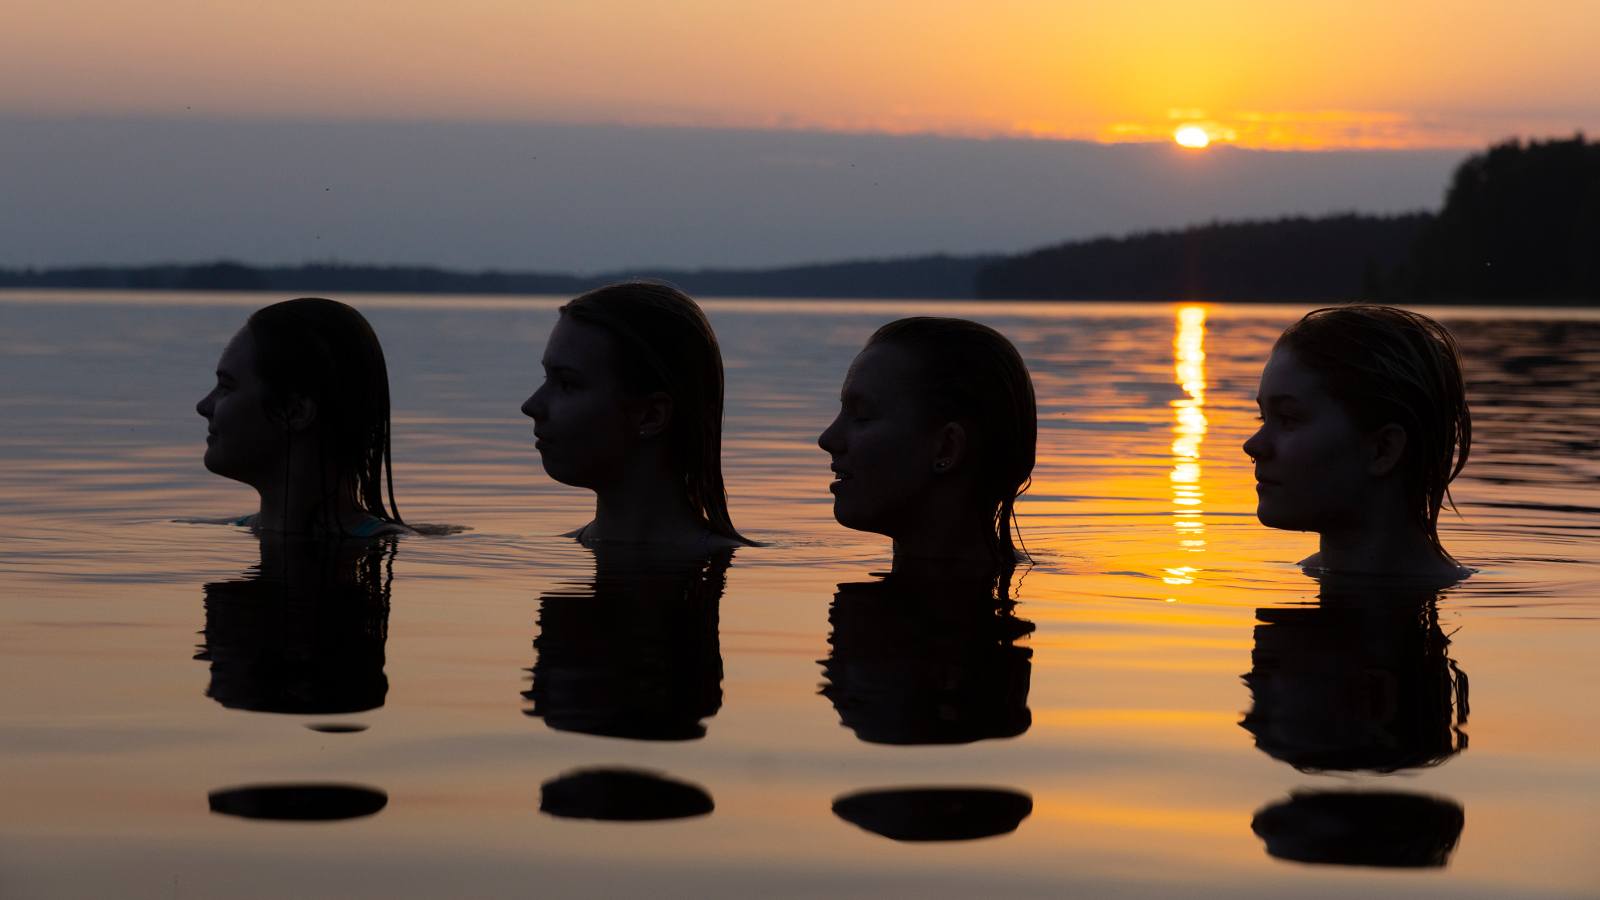 Kuvassa on auringonlaskun vesimaisemassa neljän pään silhuetit veden päällä.